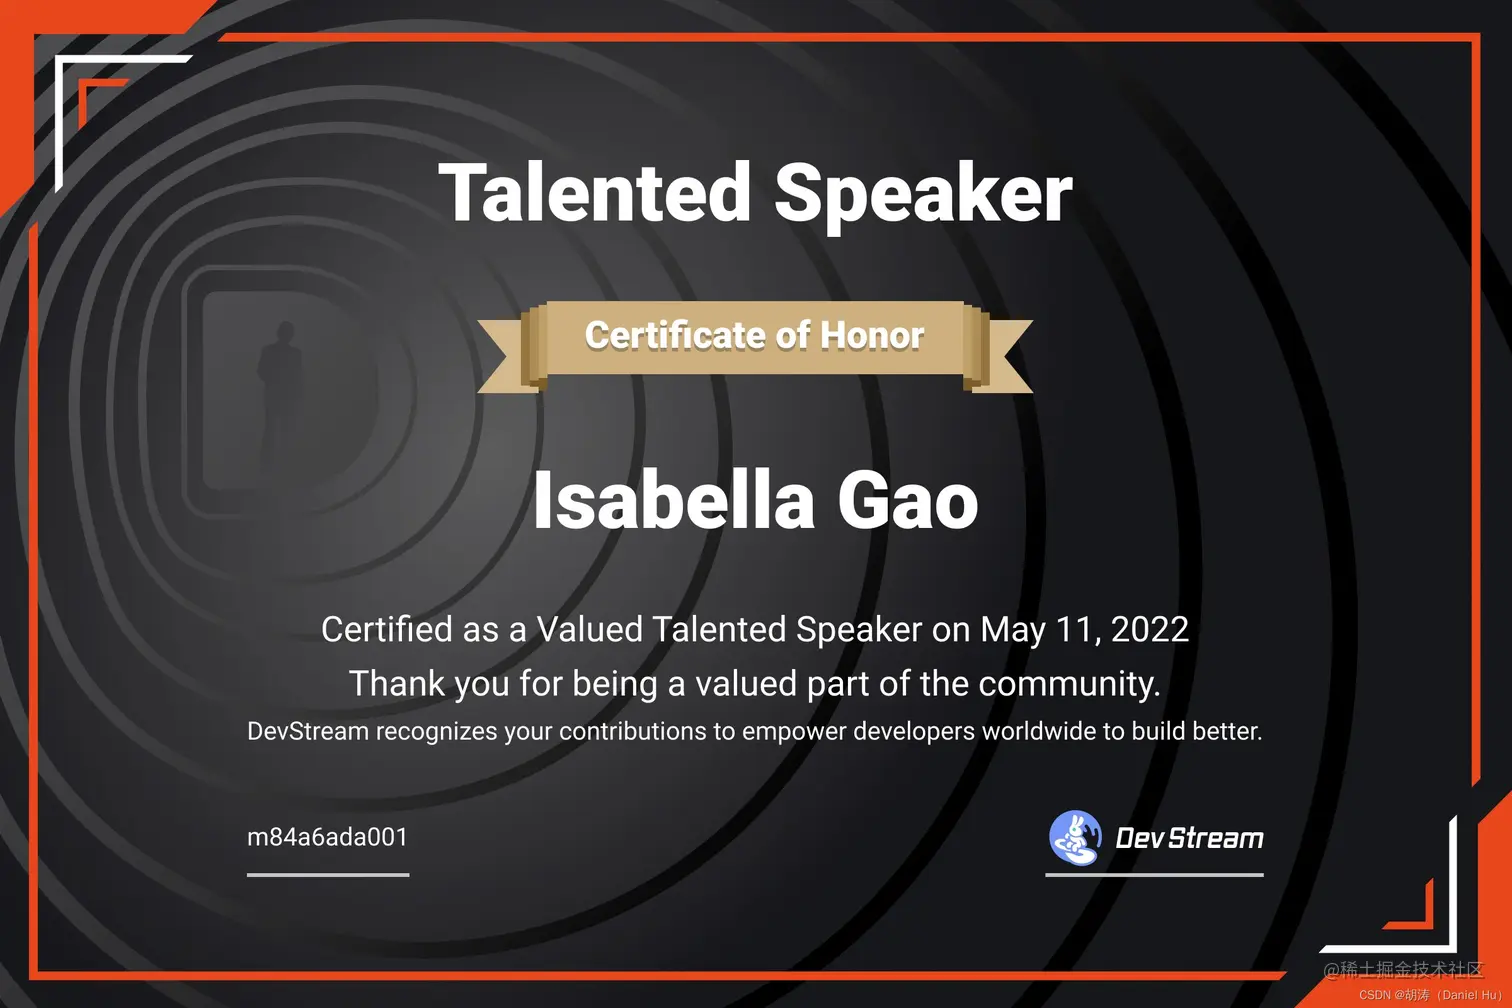 DevStream Talented Speaker No.1